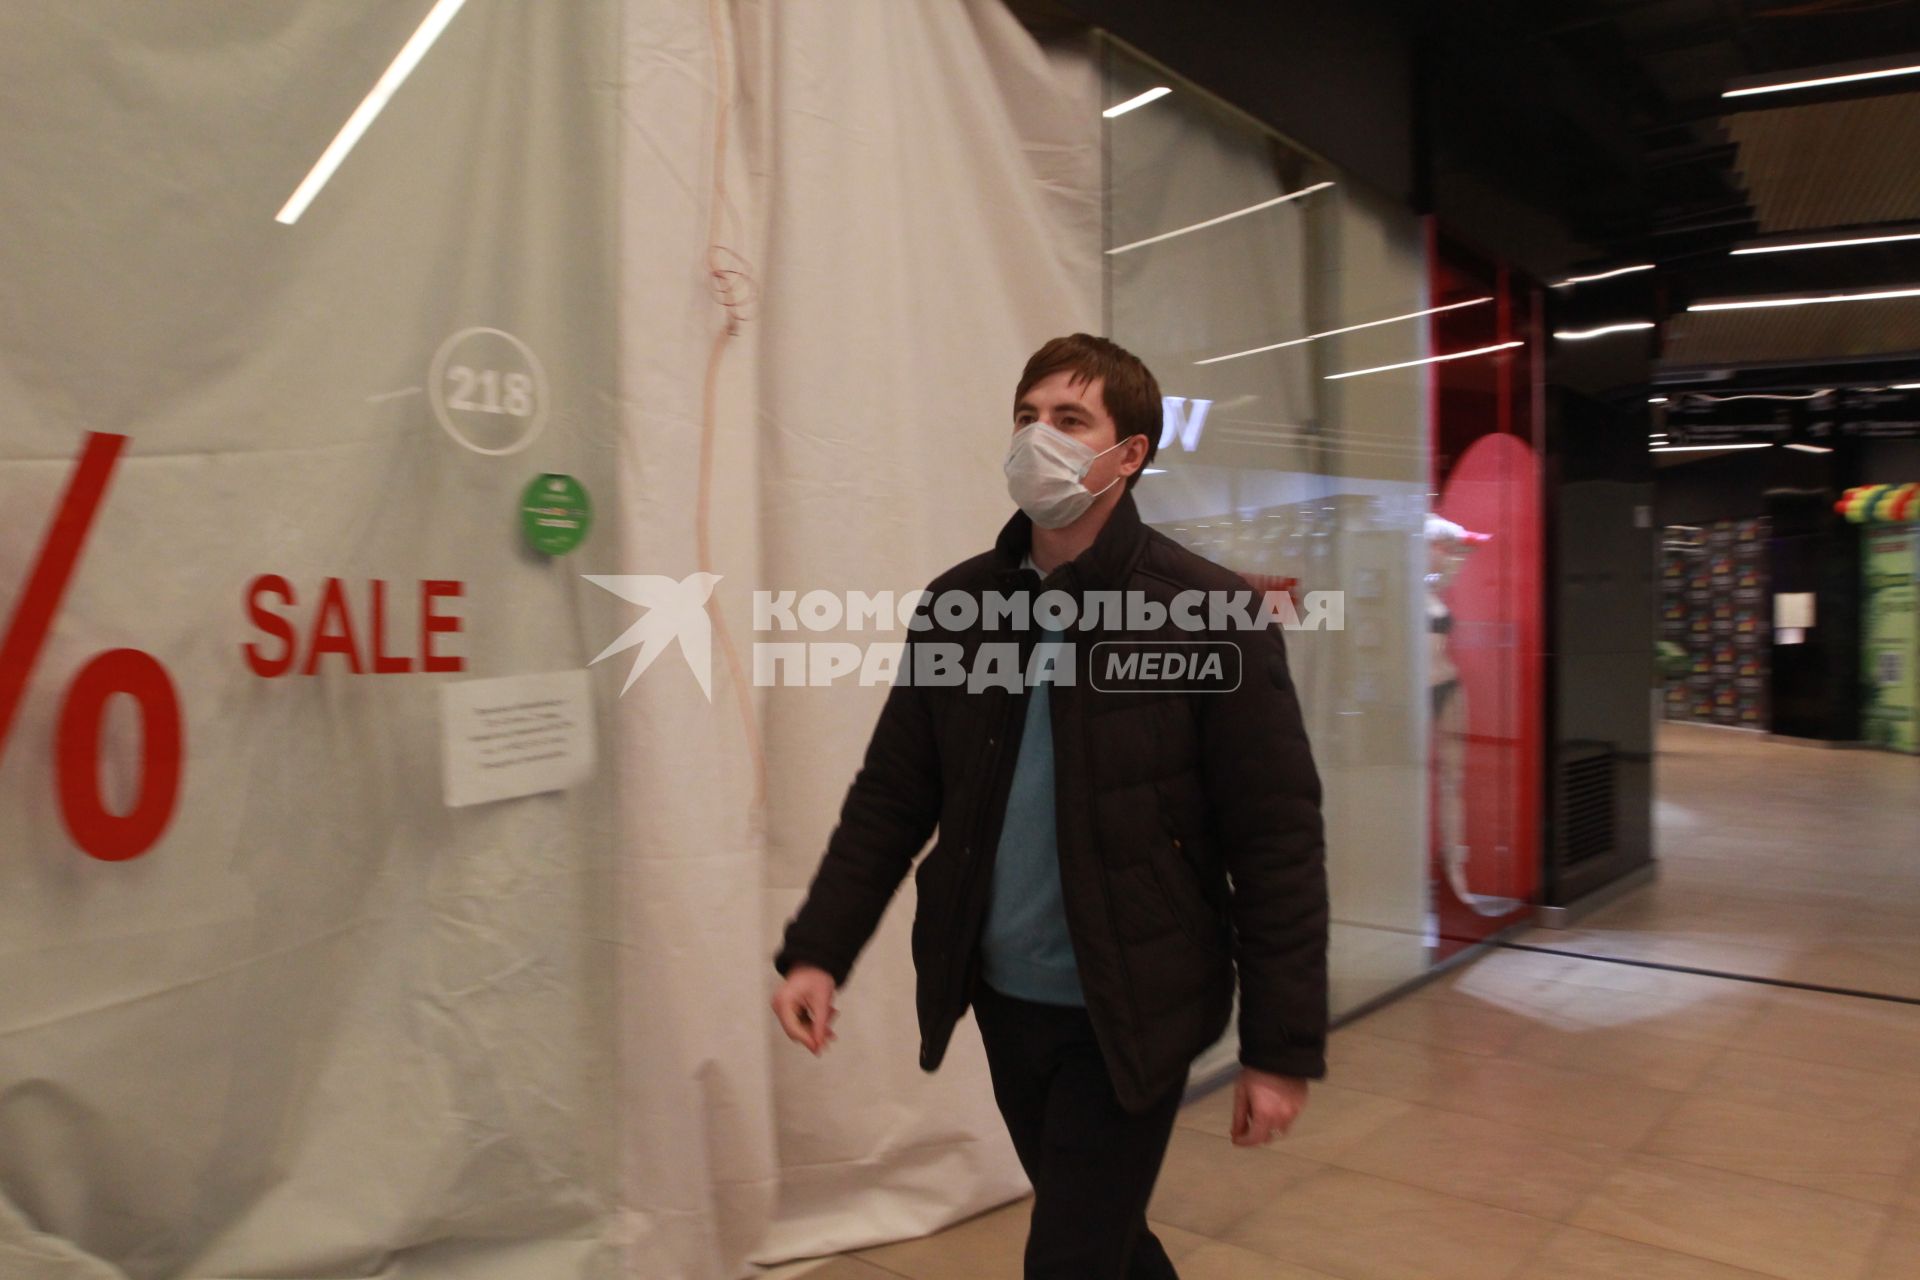 Иркутск. Мужчина в медицинской маске  в торговом центре.